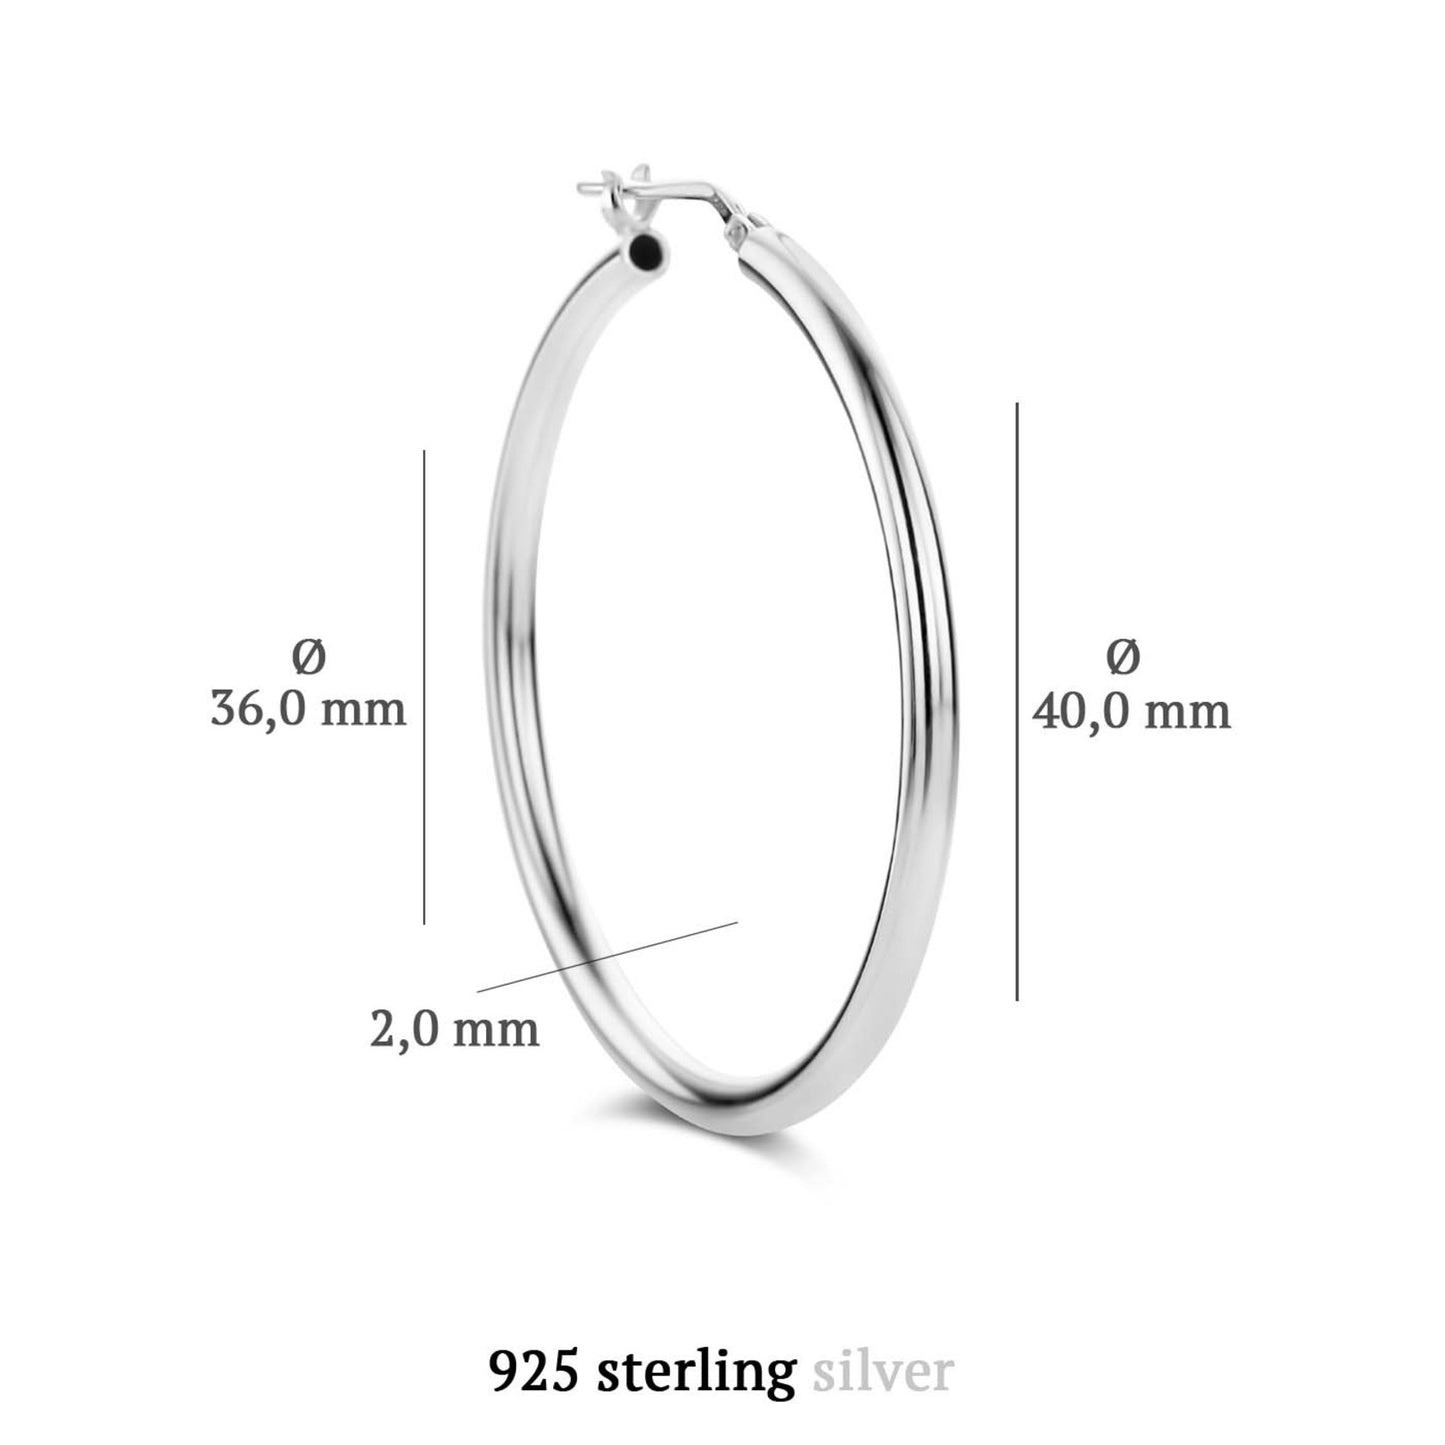 Sorprendimi 925 Sterling Silber Ohrring-Set